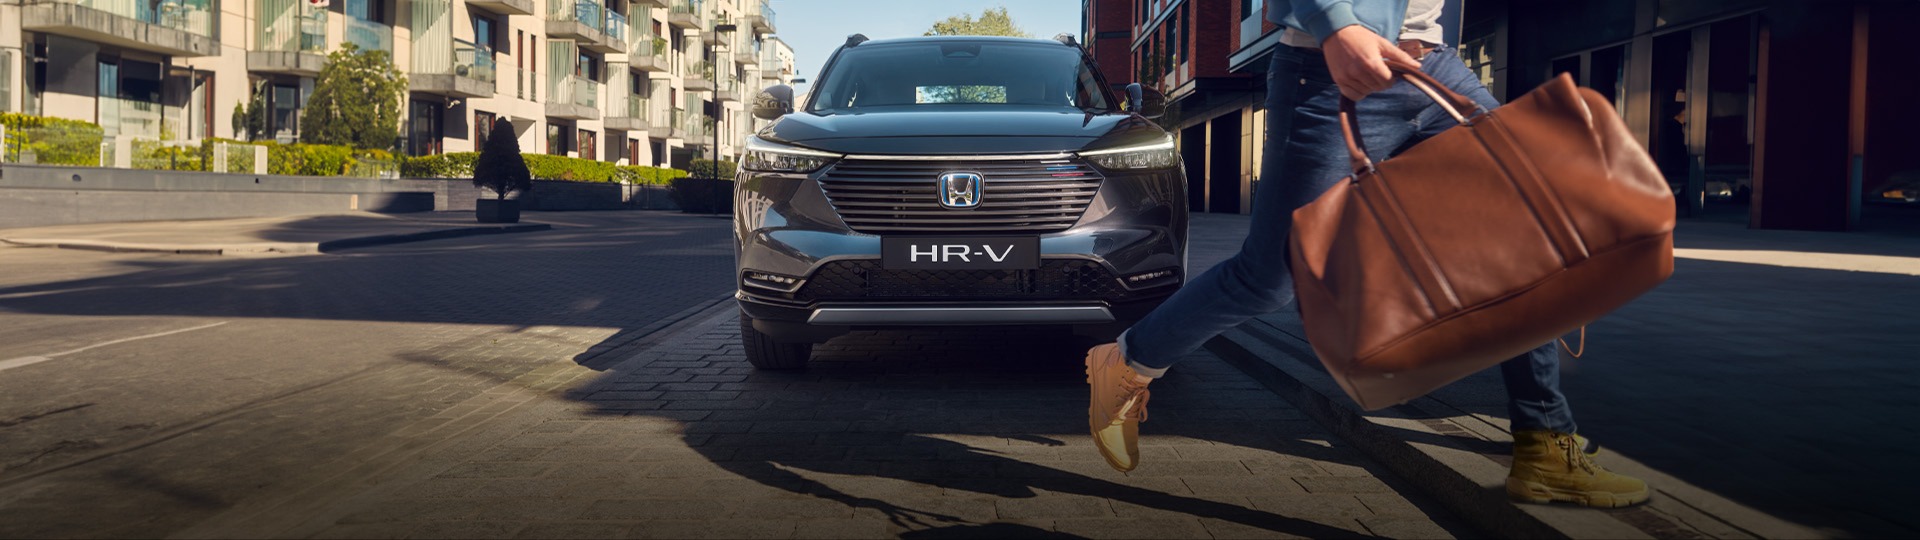 Honda Plaza  Marmara Hayalinizdeki HR-V'ye giden yolu kısalttık.